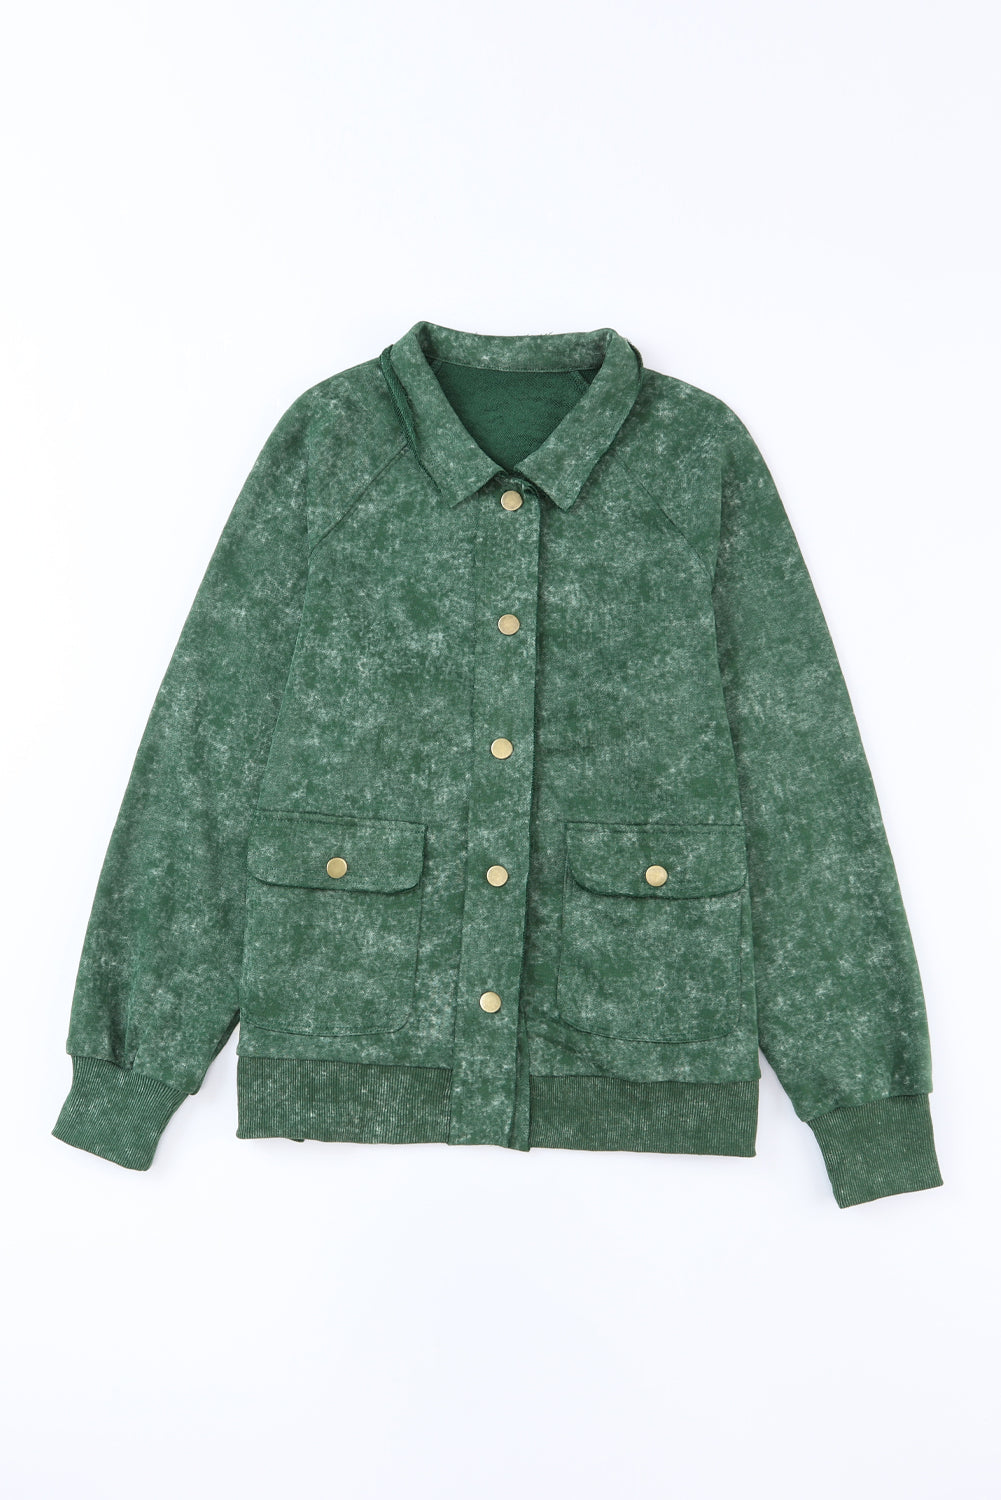 Grüne Vintage-Hemdjacke mit verwaschener Pattentasche und Knöpfen